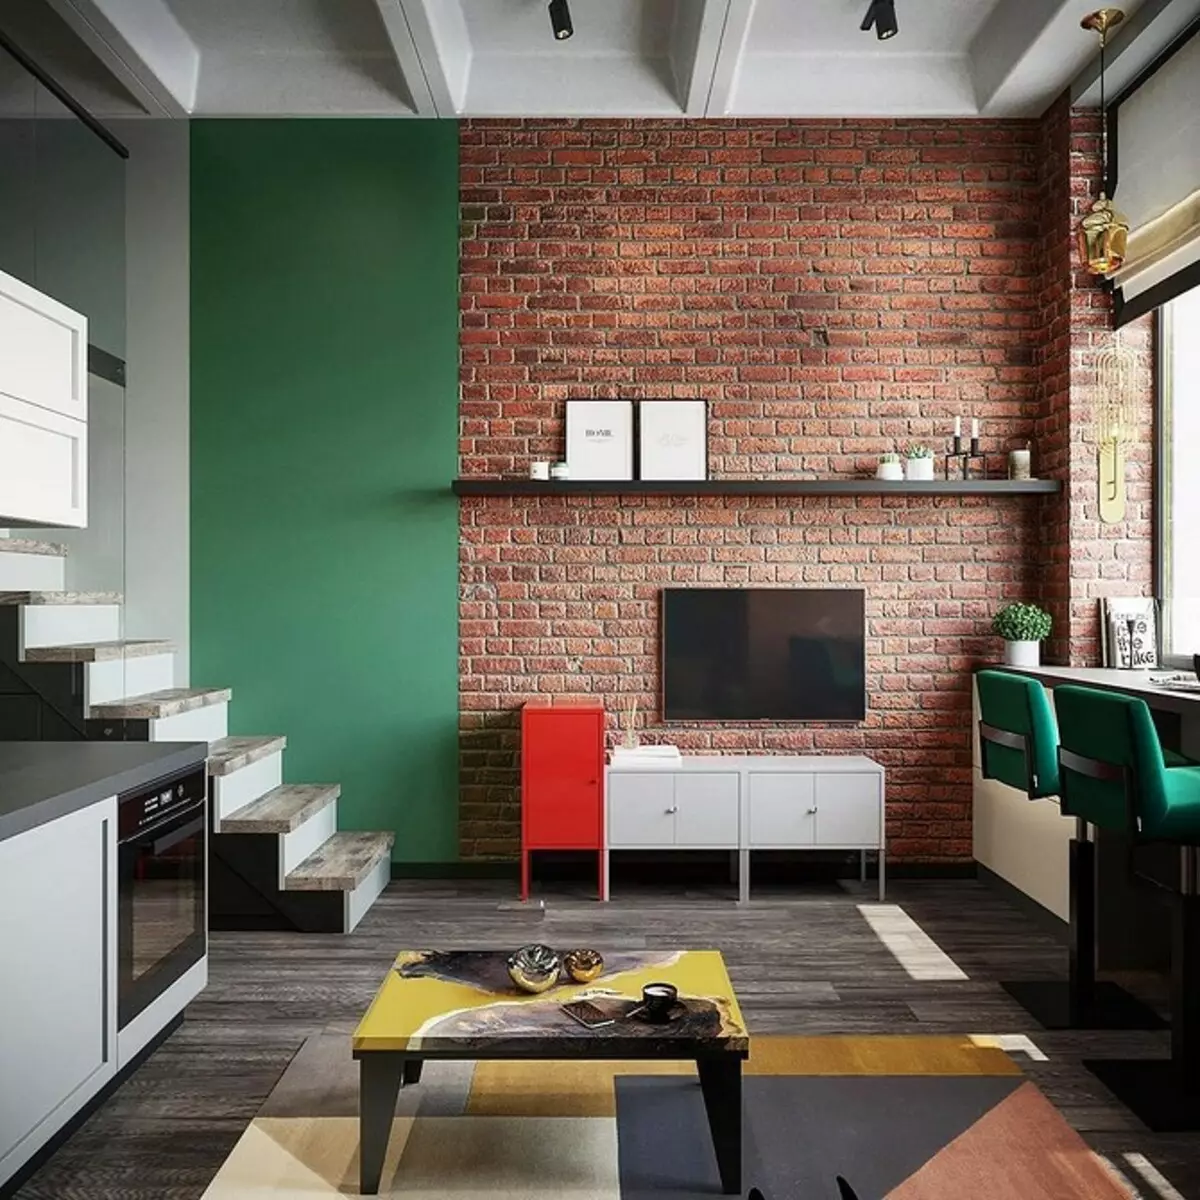 Rregullat themelore dhe 4 projekte elegant që do të ndihmojnë të organizoni një apartament - Loft Studio 3400_116